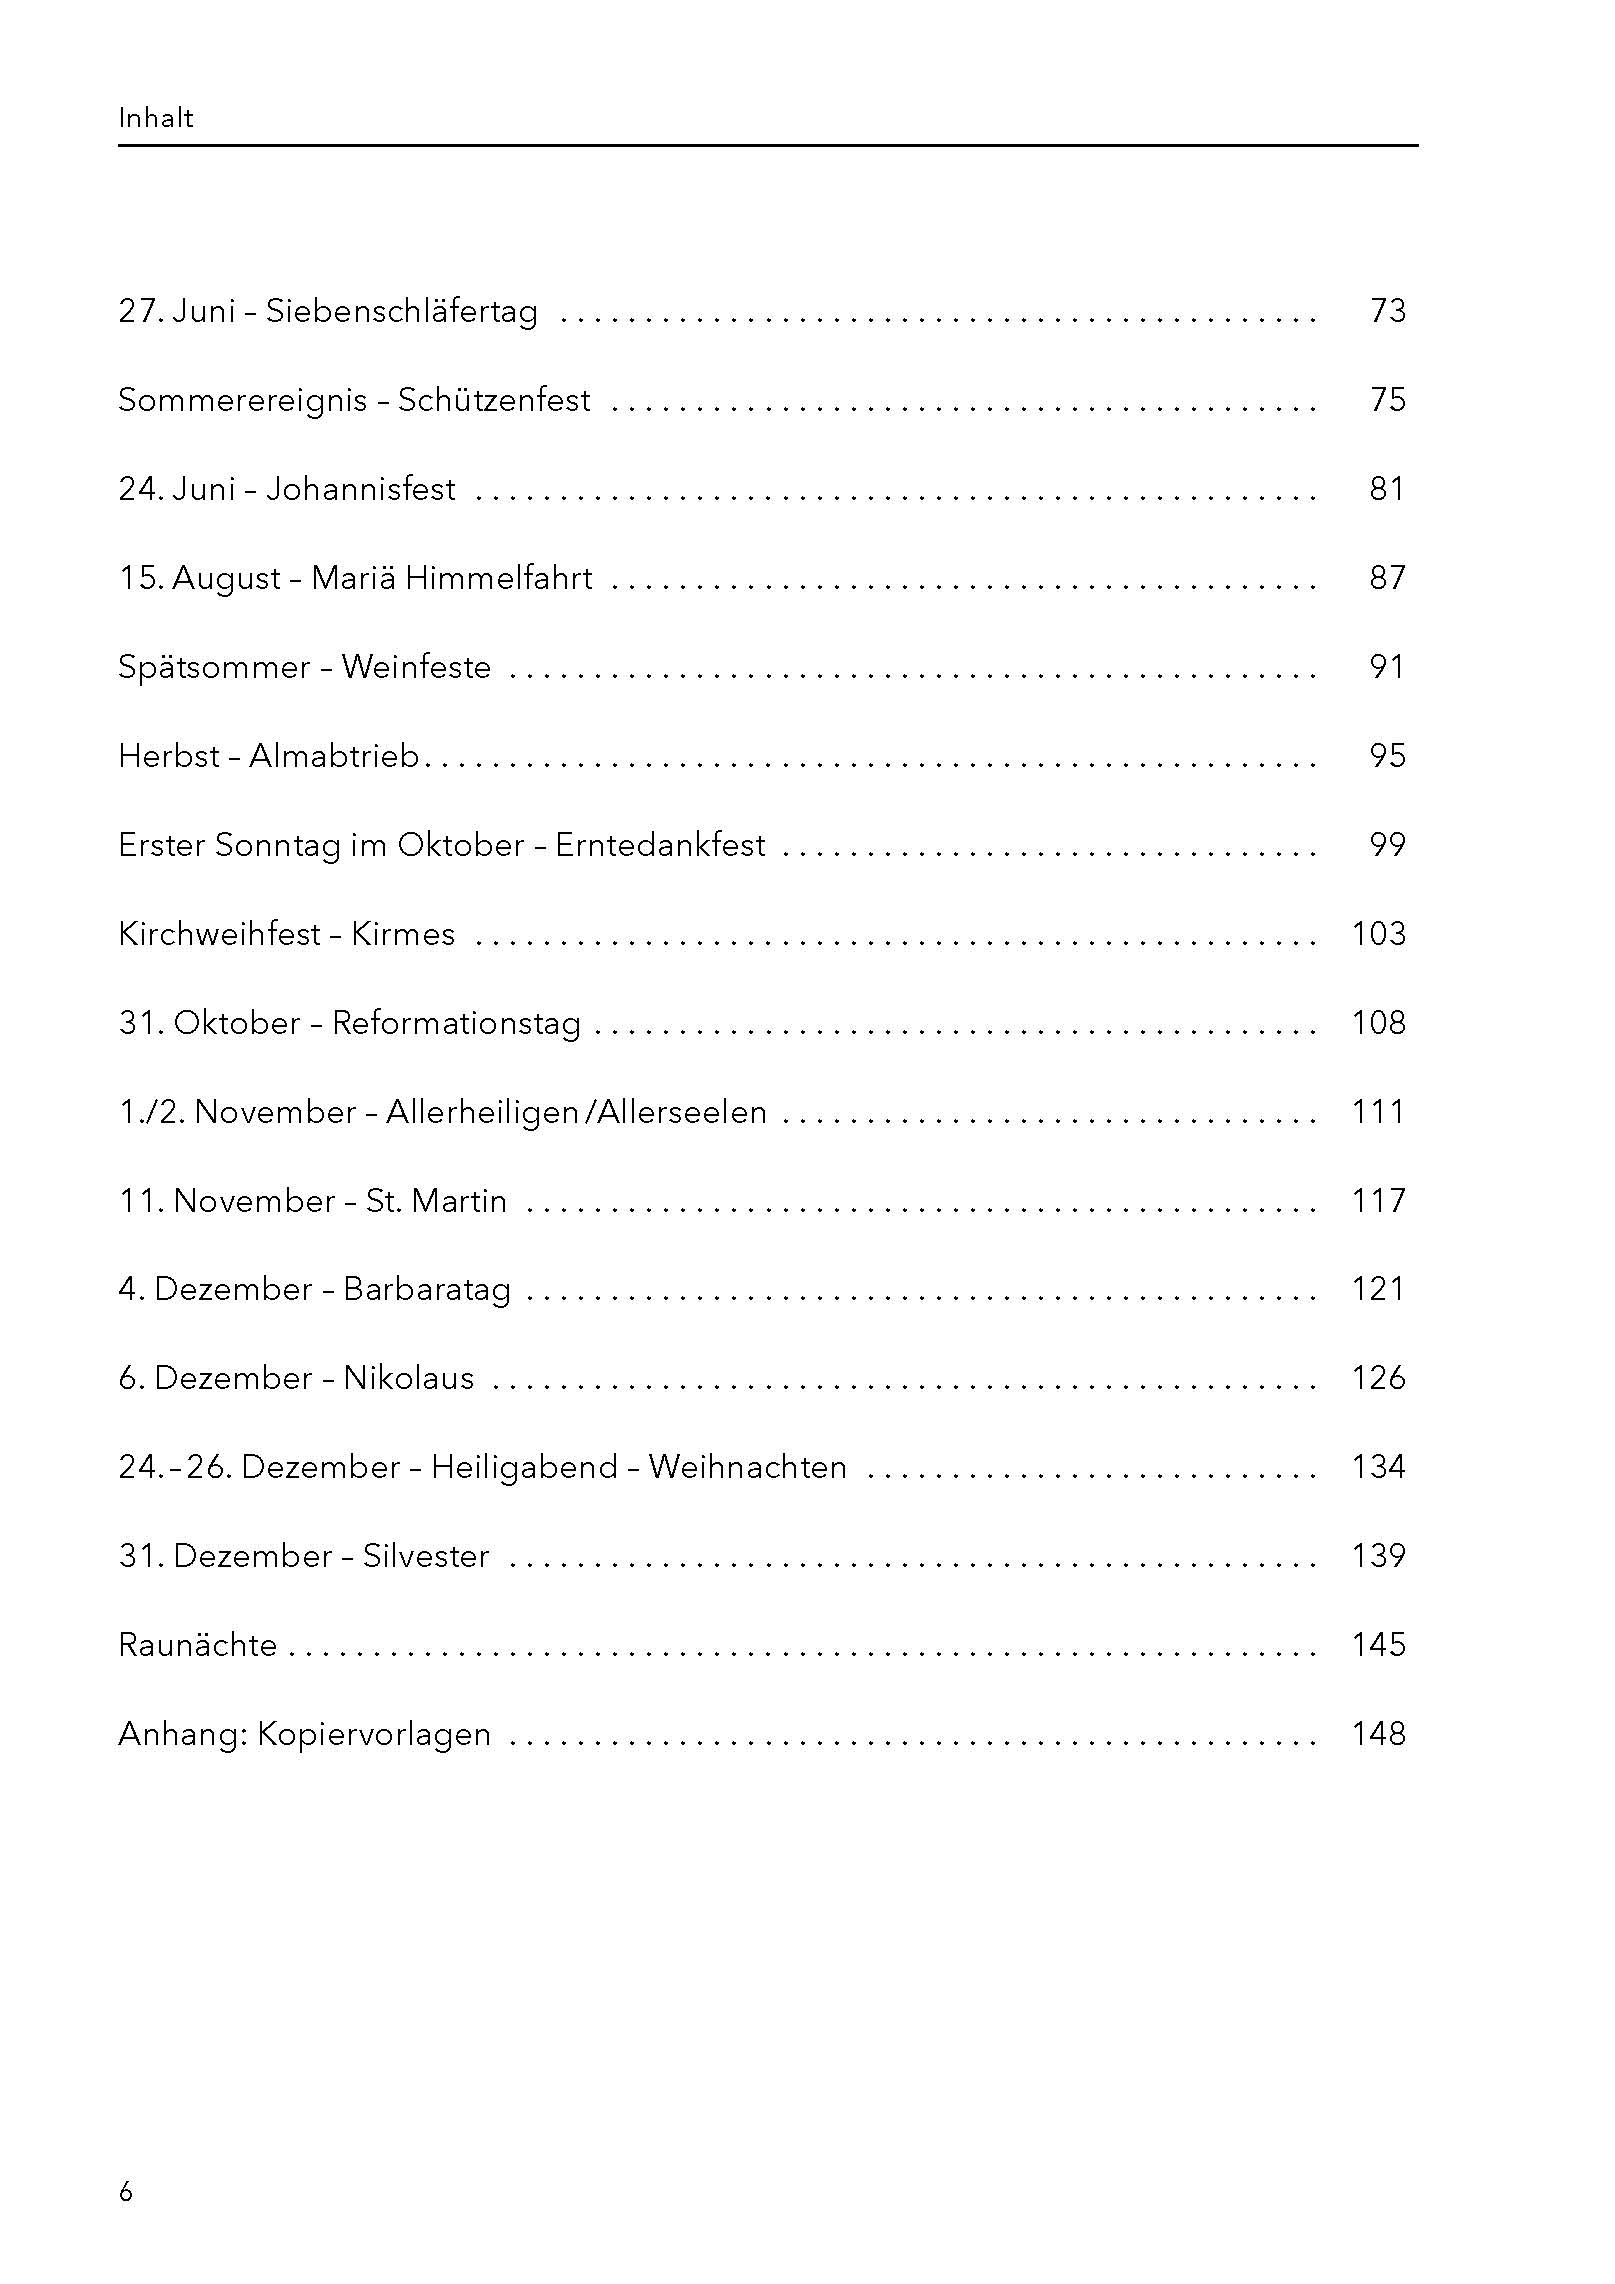 Feste und Bräuche. Praxisbuch für Seniorenarbeit. Inhaltsverzeichnis